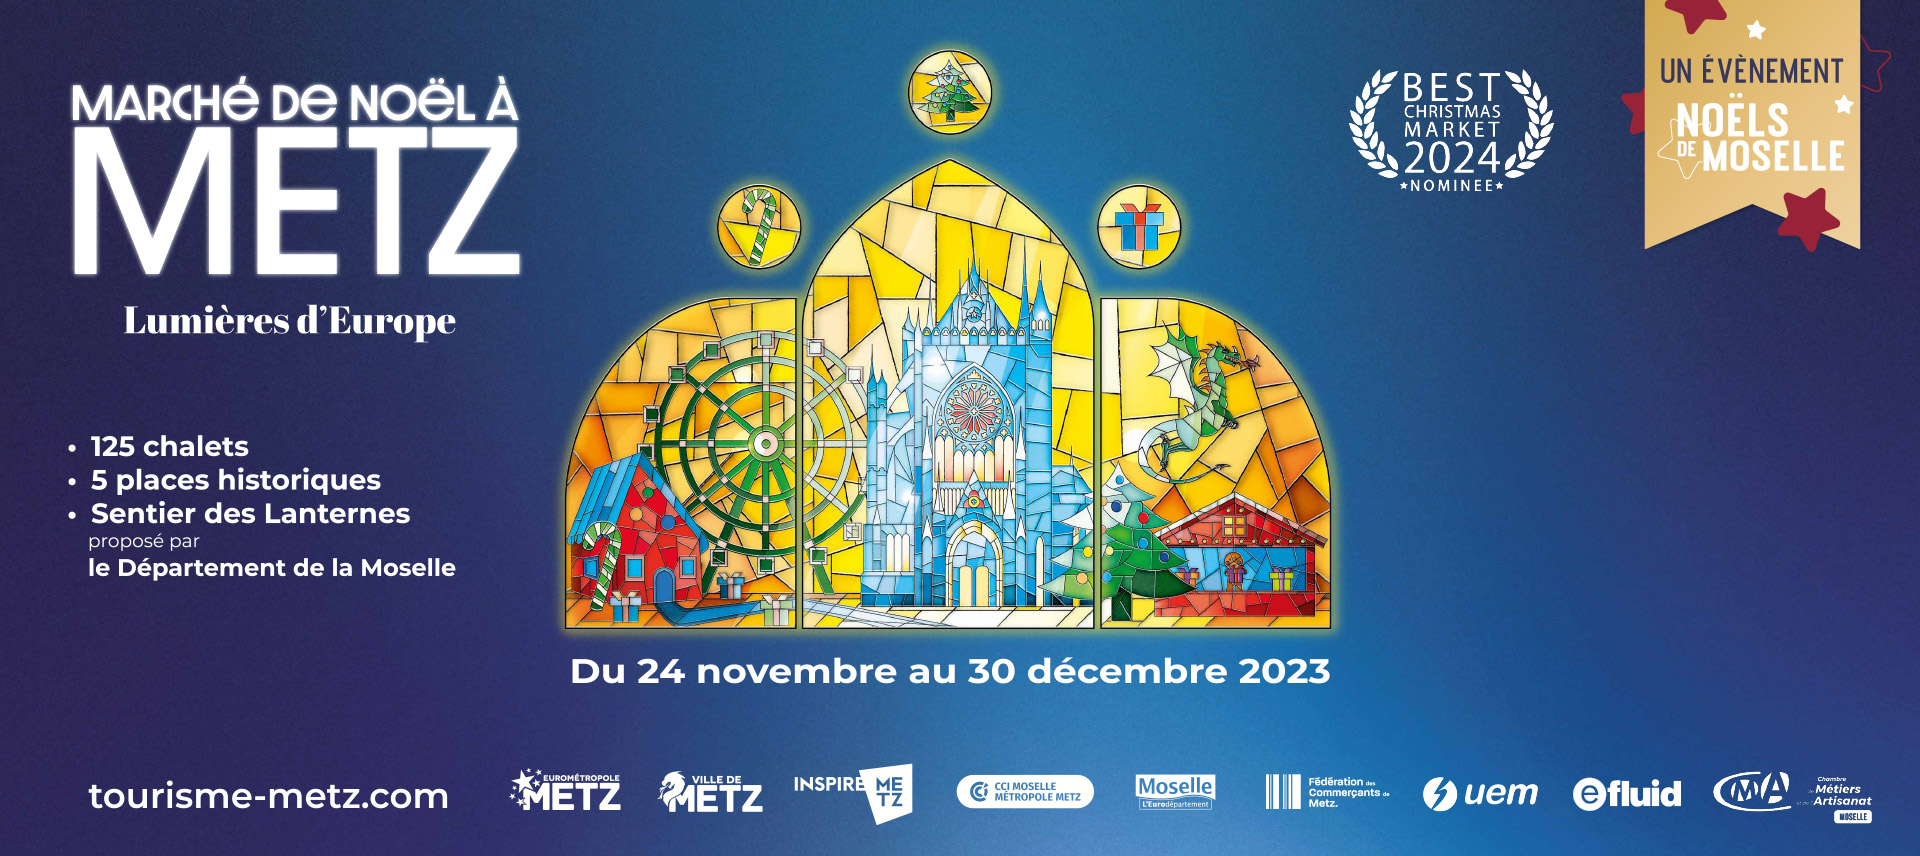 Du 24 novembre au 30 décembre 2023, venez découvrir les 125 chalets du marché de Noël à Metz sur 5 places historiques.